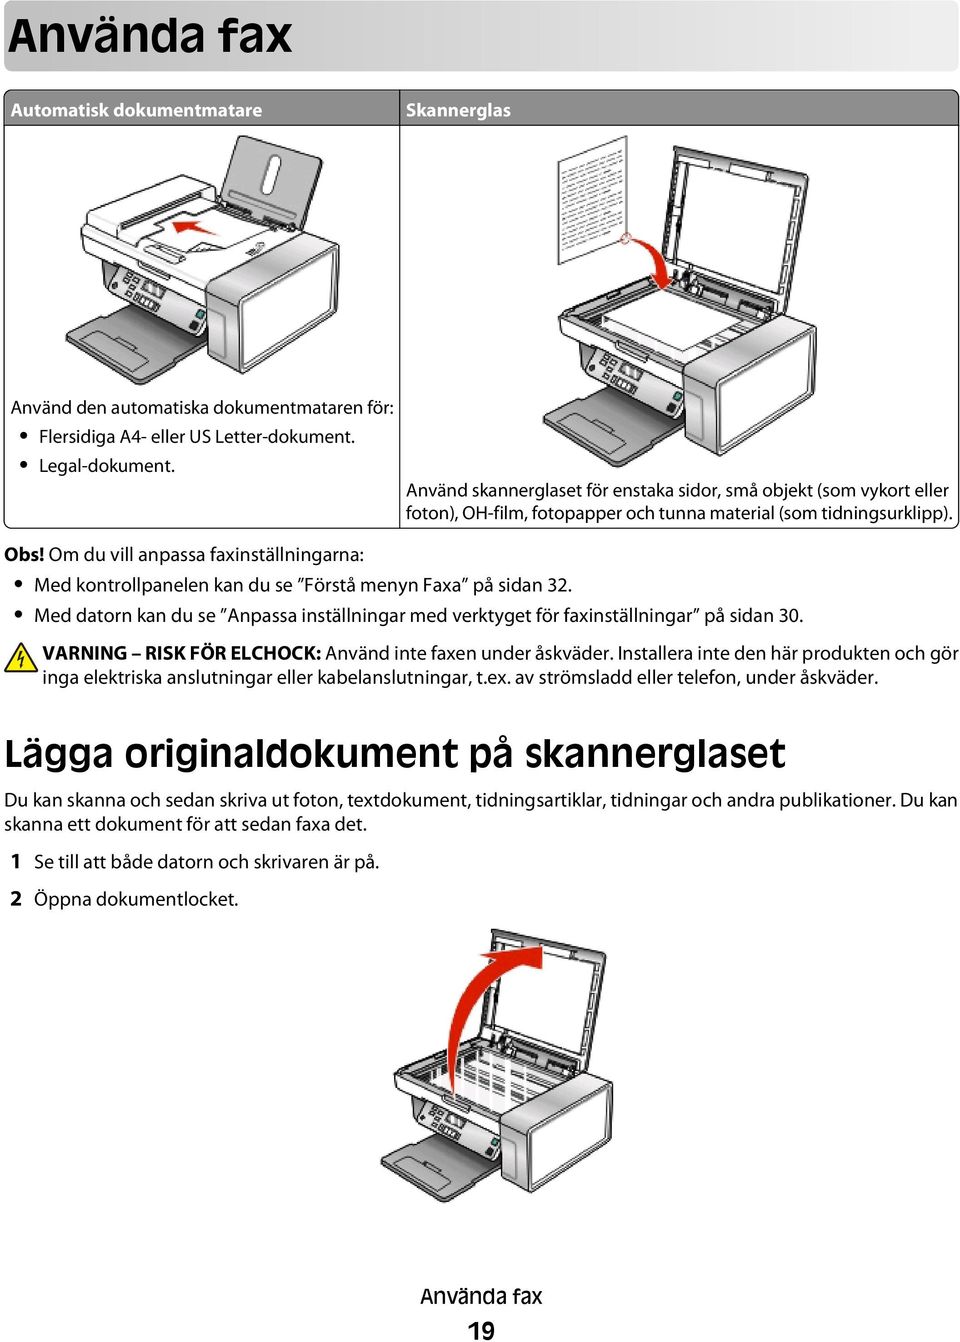 Om du vill anpassa faxinställningarna: Med kontrollpanelen kan du se Förstå menyn Faxa på sidan 32. Med datorn kan du se Anpassa inställningar med verktyget för faxinställningar på sidan 30.